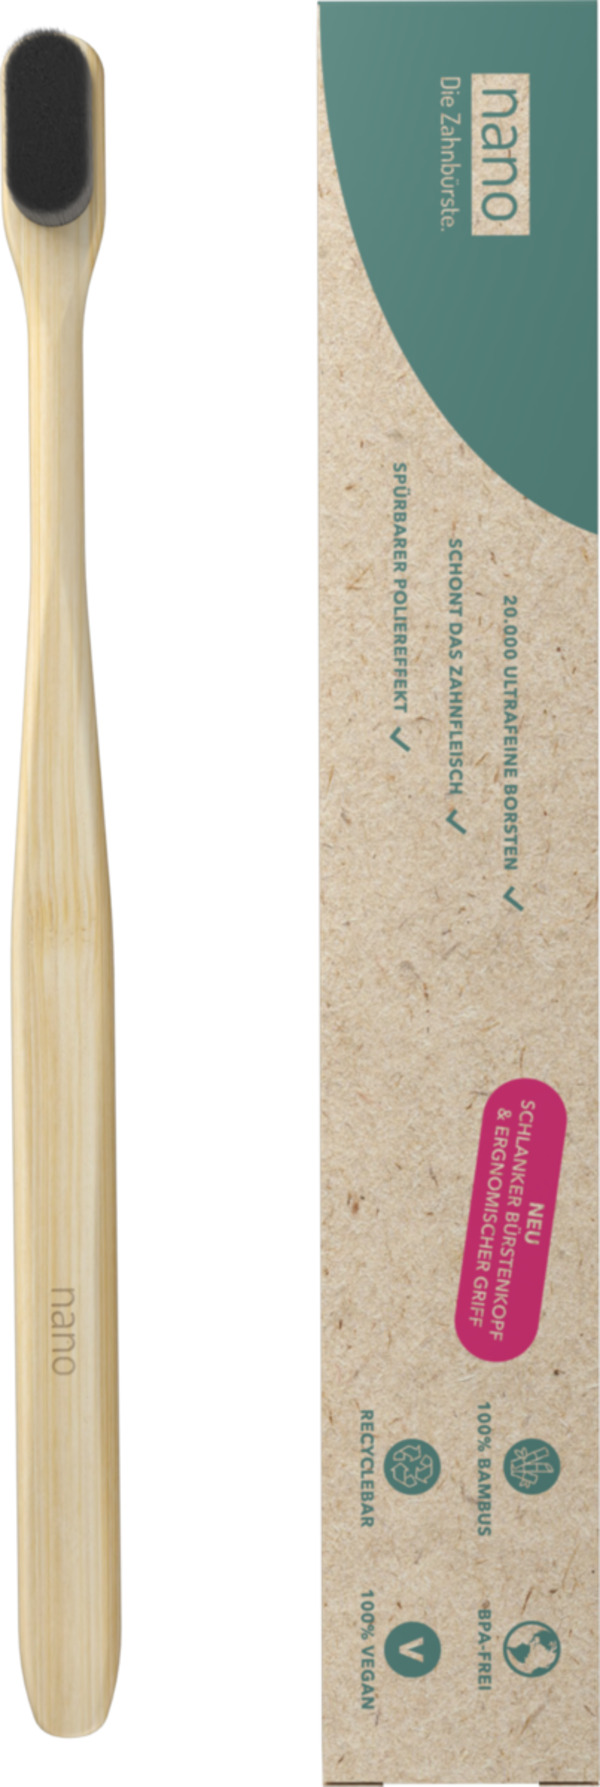 Bild 1 von nano Bambus Zahnbürste